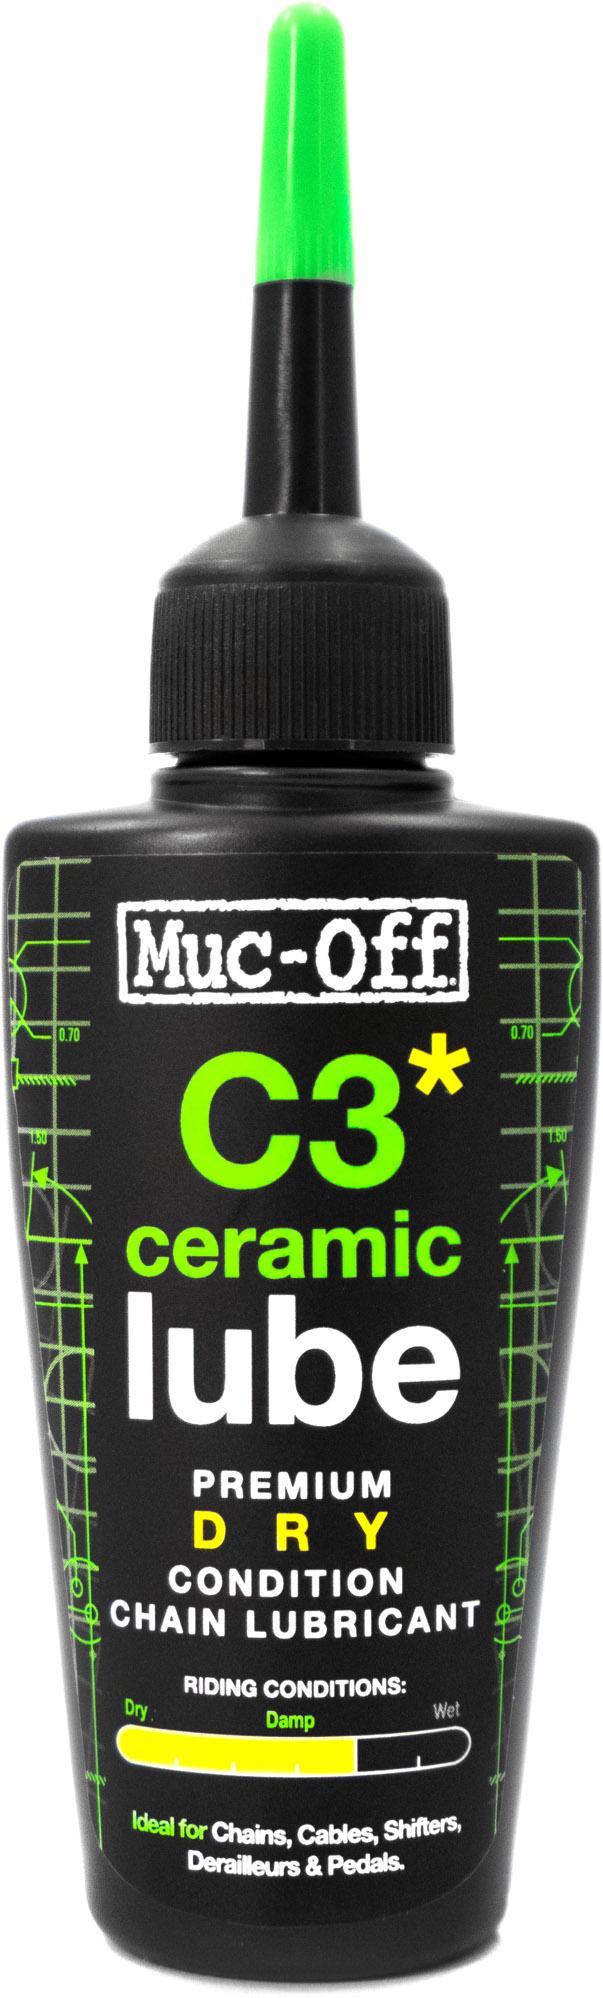 Muc-off C3 Dry Weather Ceramic Lube (50ml) - Transparent